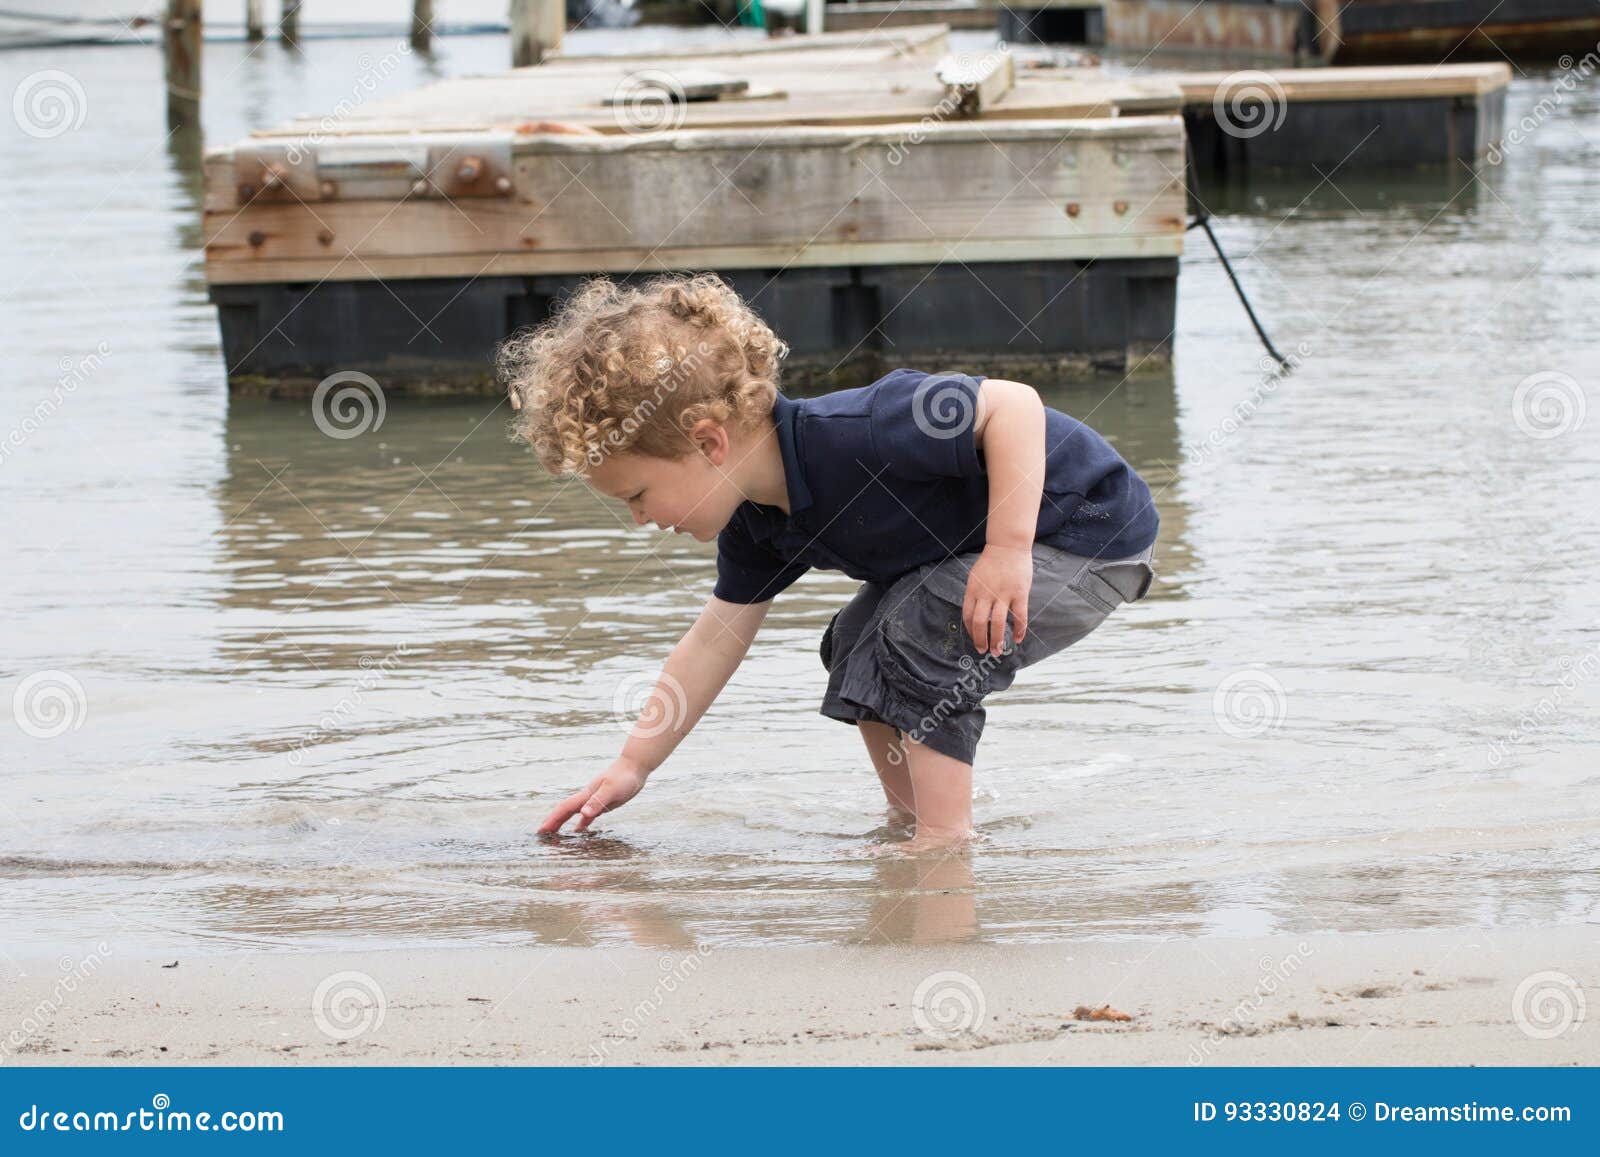 搜寻壳的年轻男孩在港口. 一个幼儿在罗德岛州渔村寻找壳或岩石 有一个老船坞在背景中 男孩有白肤金发的卷发并且是大约3岁